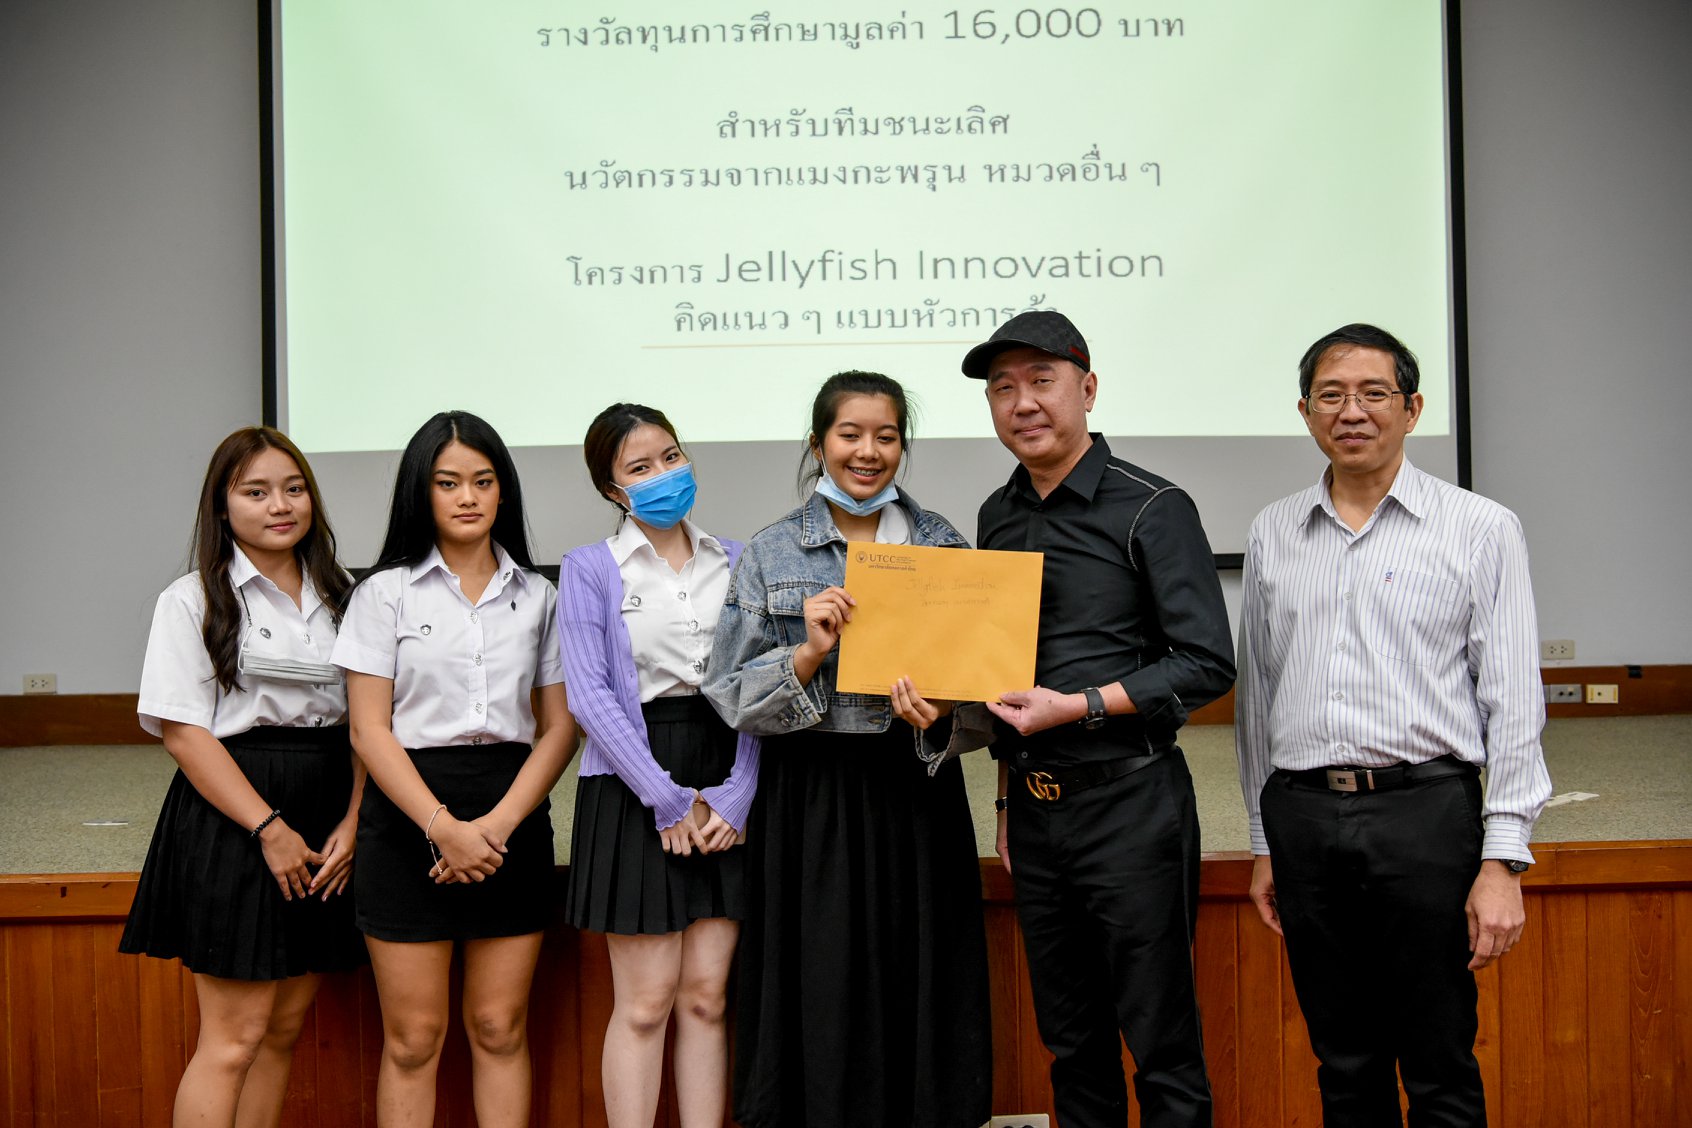 นักศึกษาคณะบริหารธุรกิจ ม.หอการค้าไทย ชนะเลิศรางวัลนวัตกรรมจากแมงกะพรุน